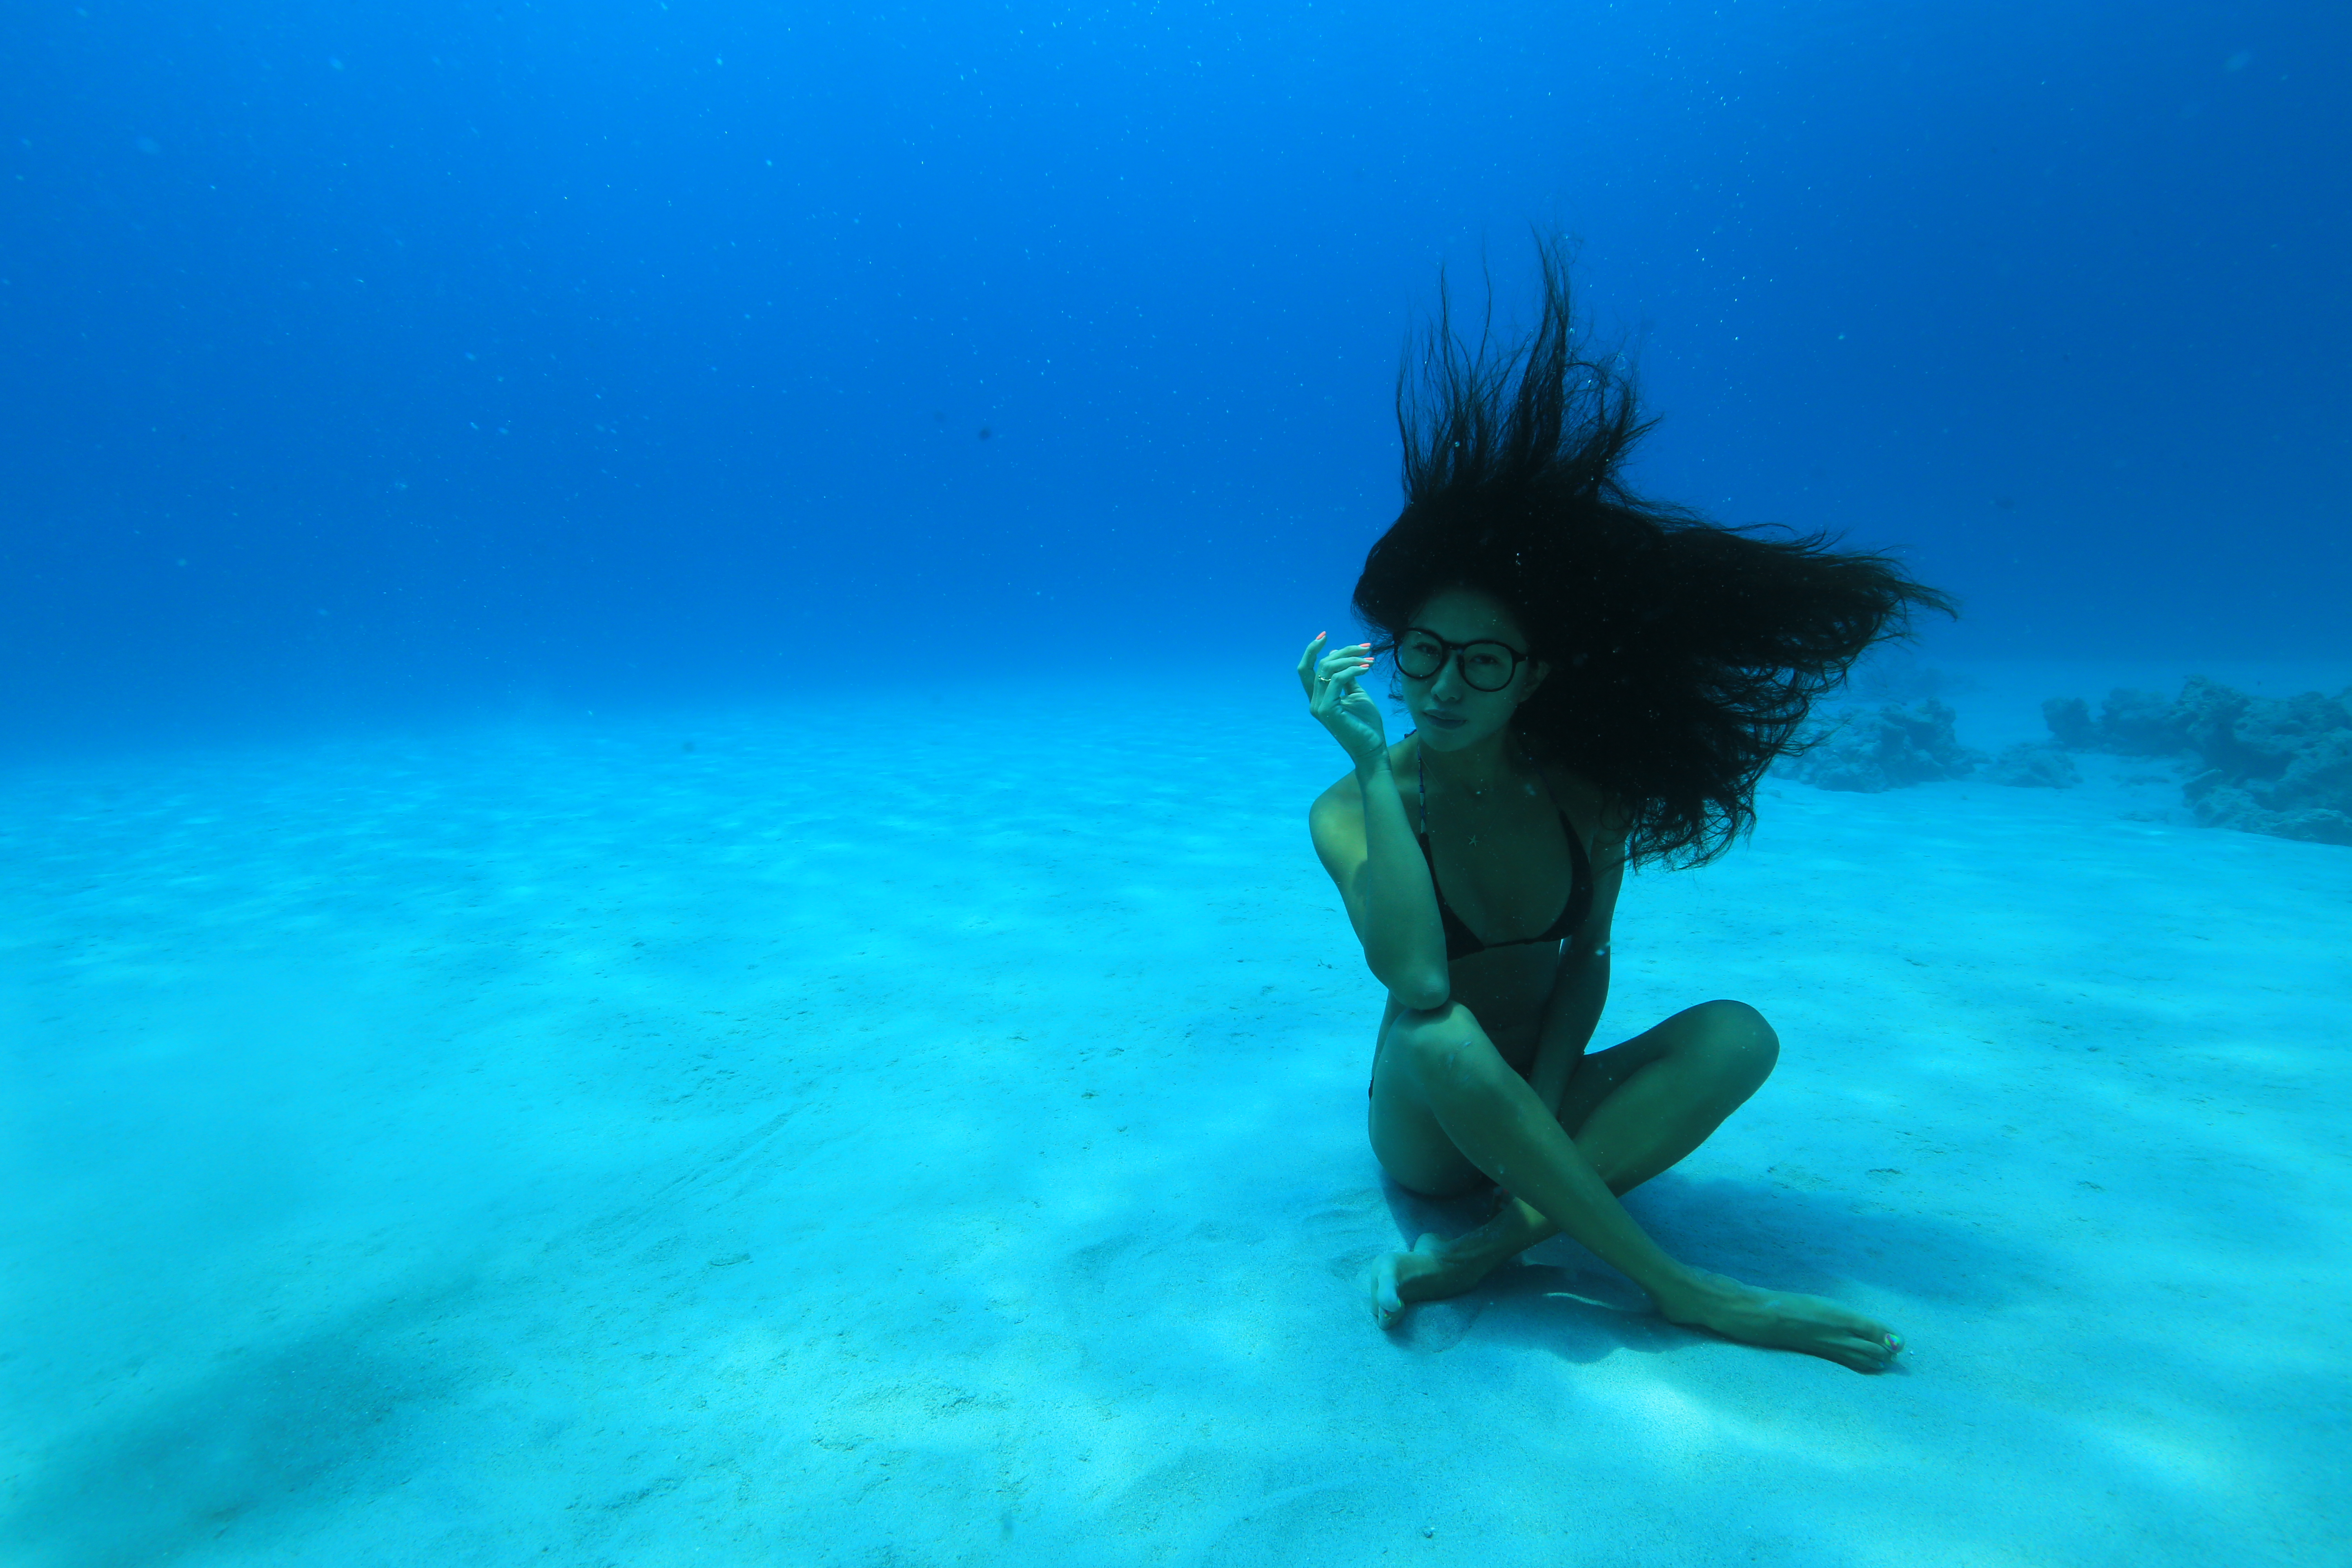 Underwater in Kerama, Okinawa